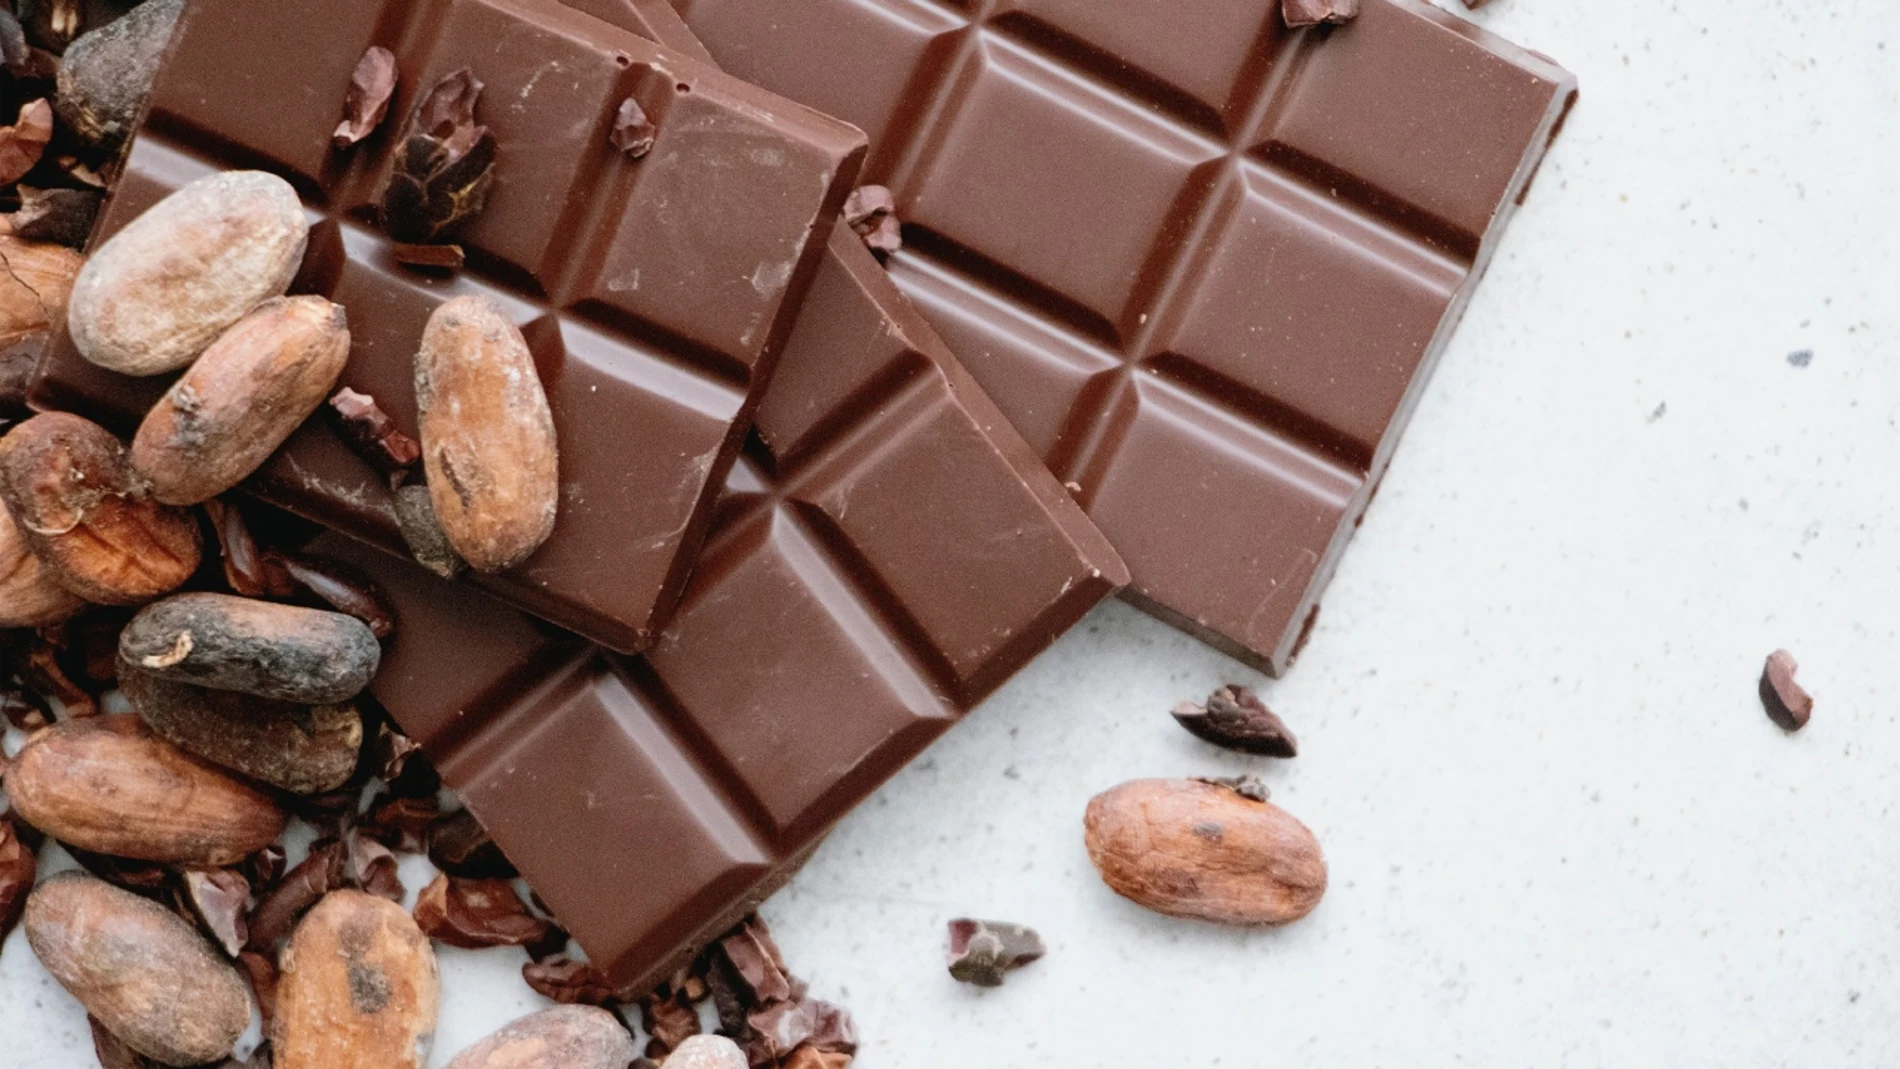 Día del Chocolate 2021 | ¿El chocolate sube la tensión? 6 mitos y verdades que te sorprenderán